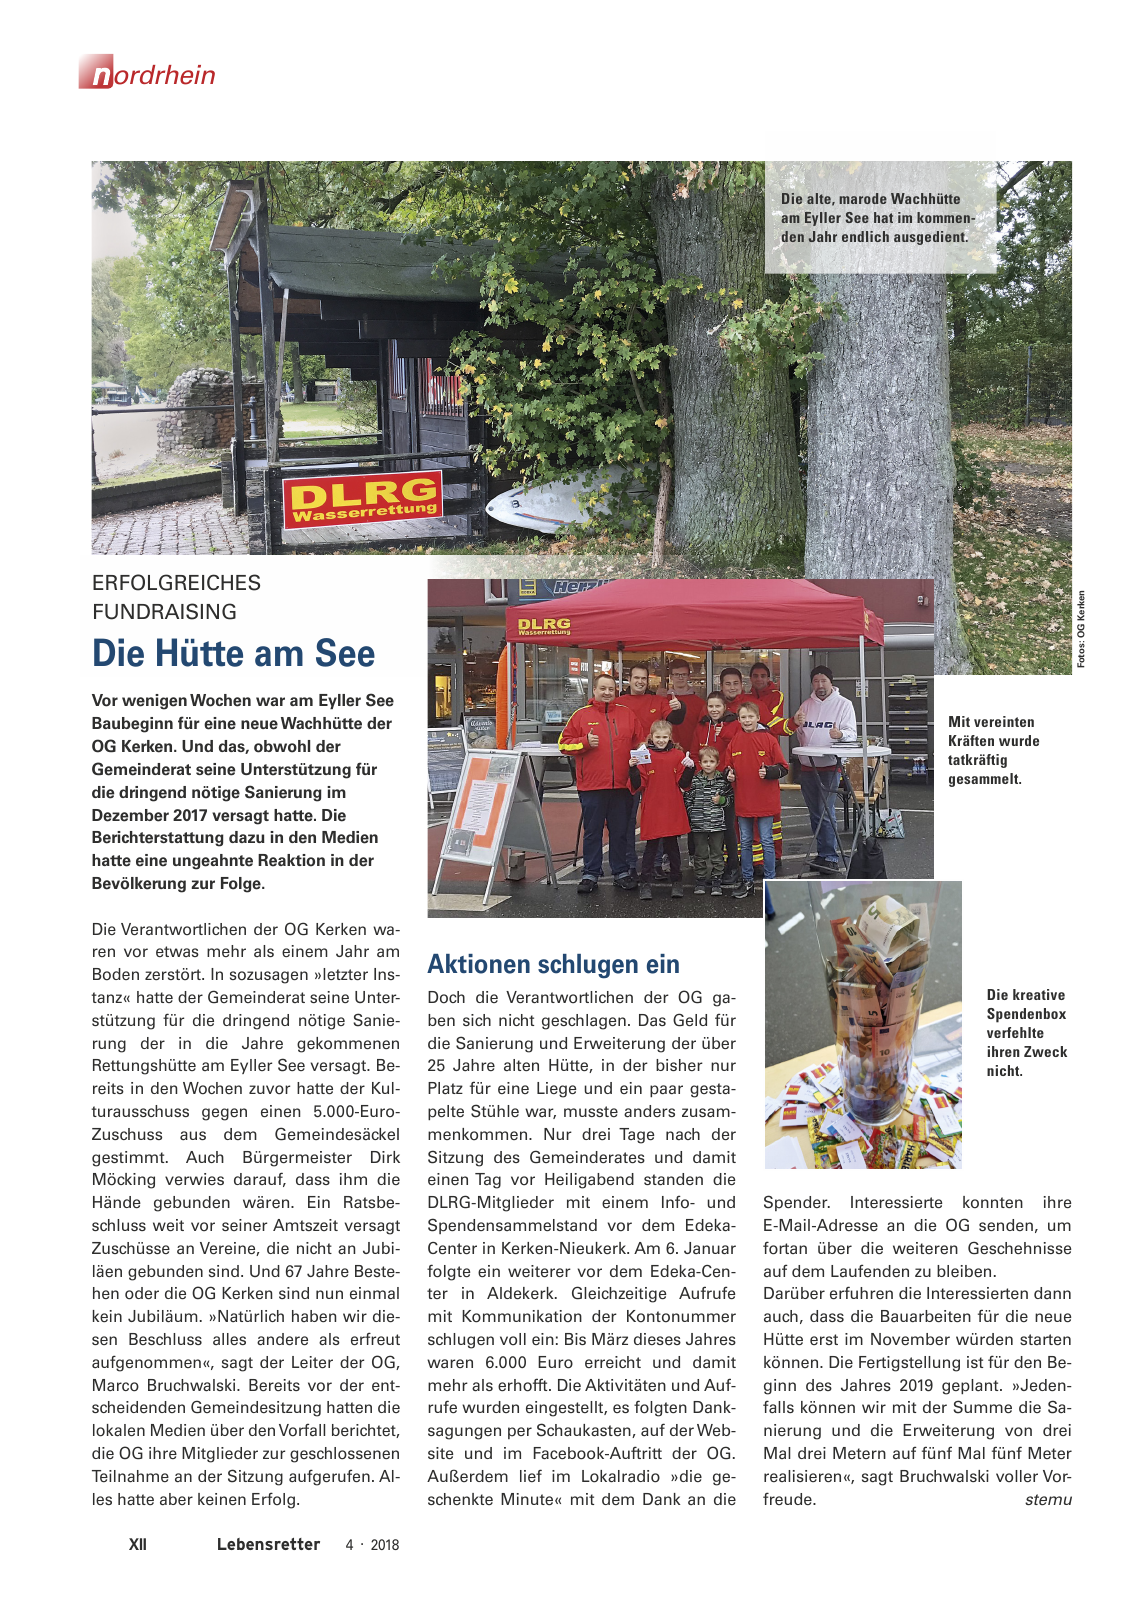 Vorschau Lebensretter 4/2018 - Regionalausgabe Nordrhein Seite 14